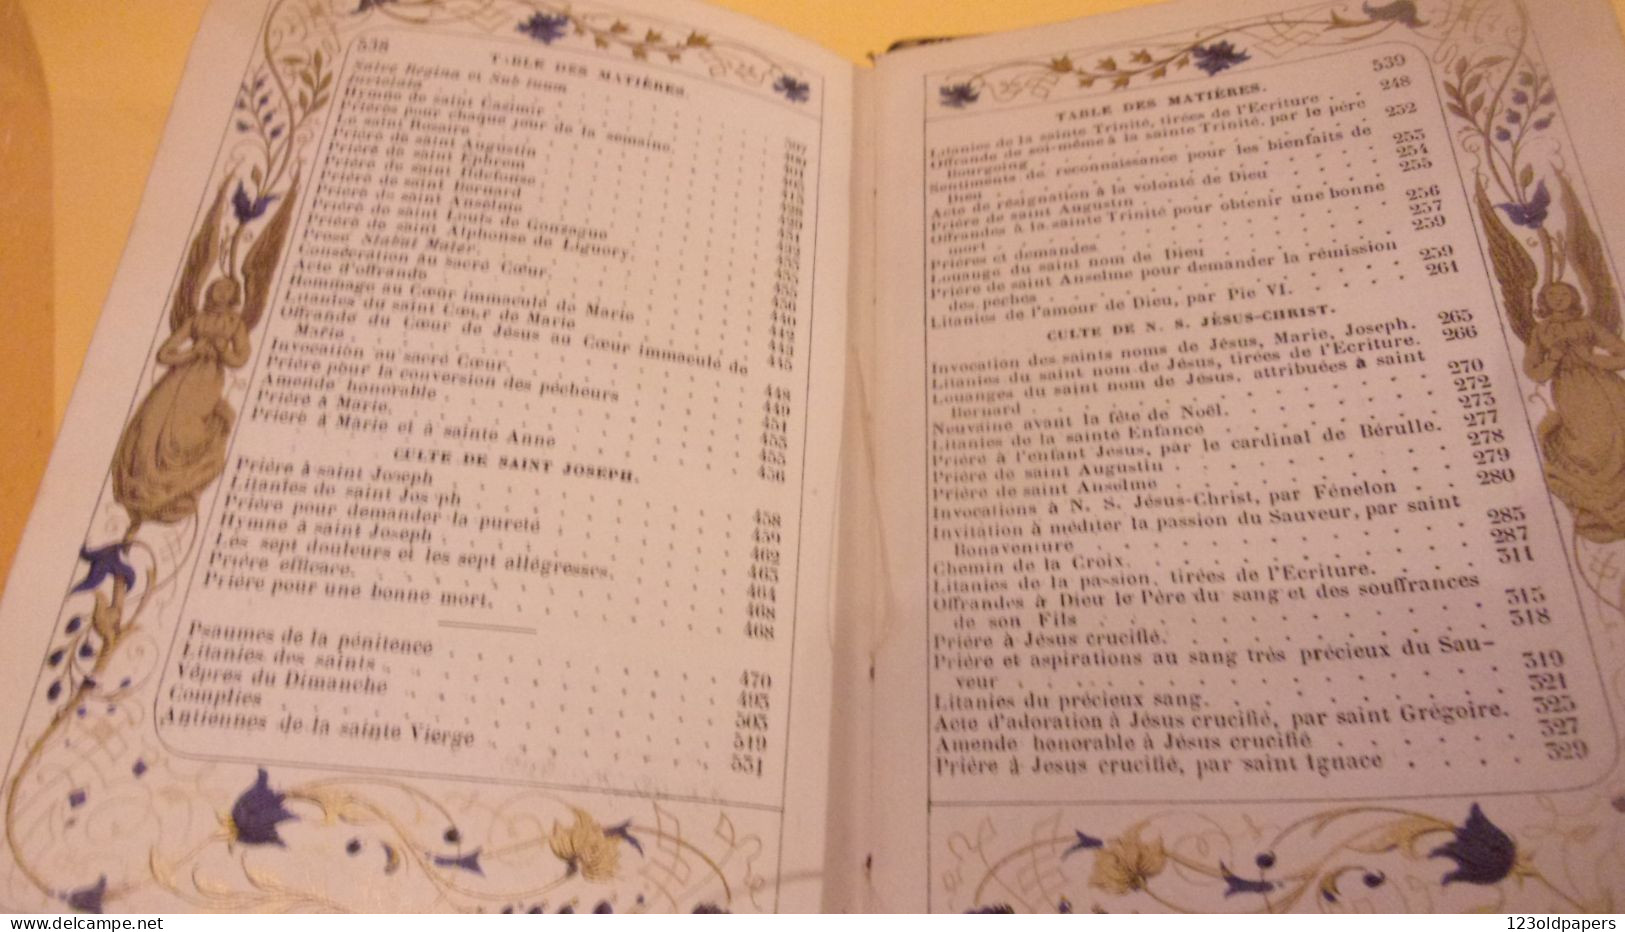 Livre de Prières Oeuvres des Saints Pères 1860 lithogr. Auguste Leroy Dijon